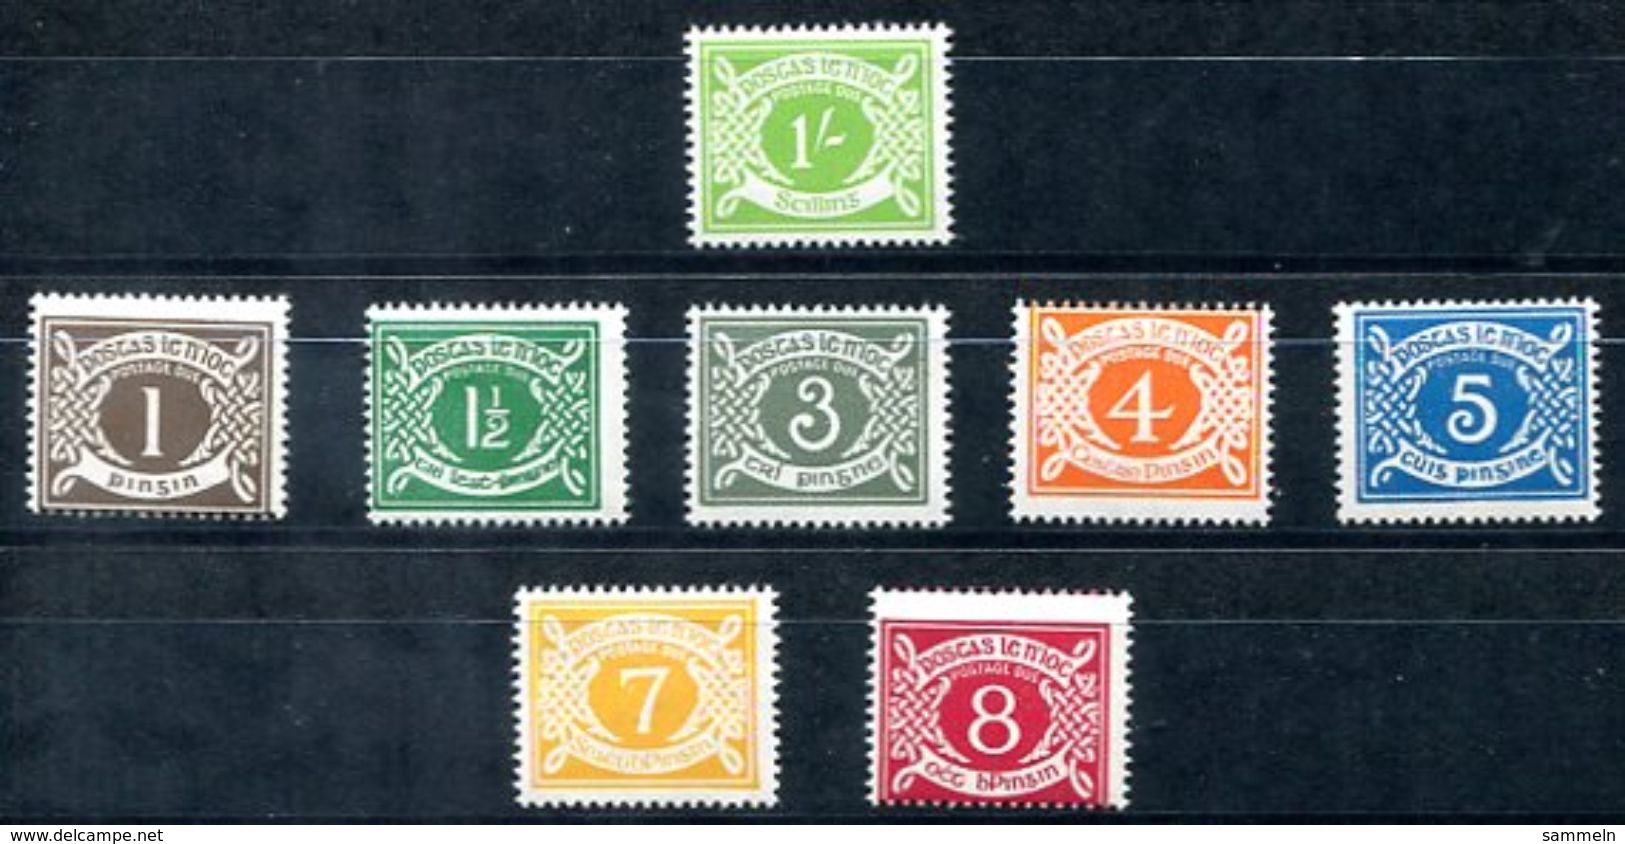 6479 - IRLAND - Postfrische Portomarken Mi.Nr. 14 + 15-21 /  Mnh Tax Stamps - Portomarken